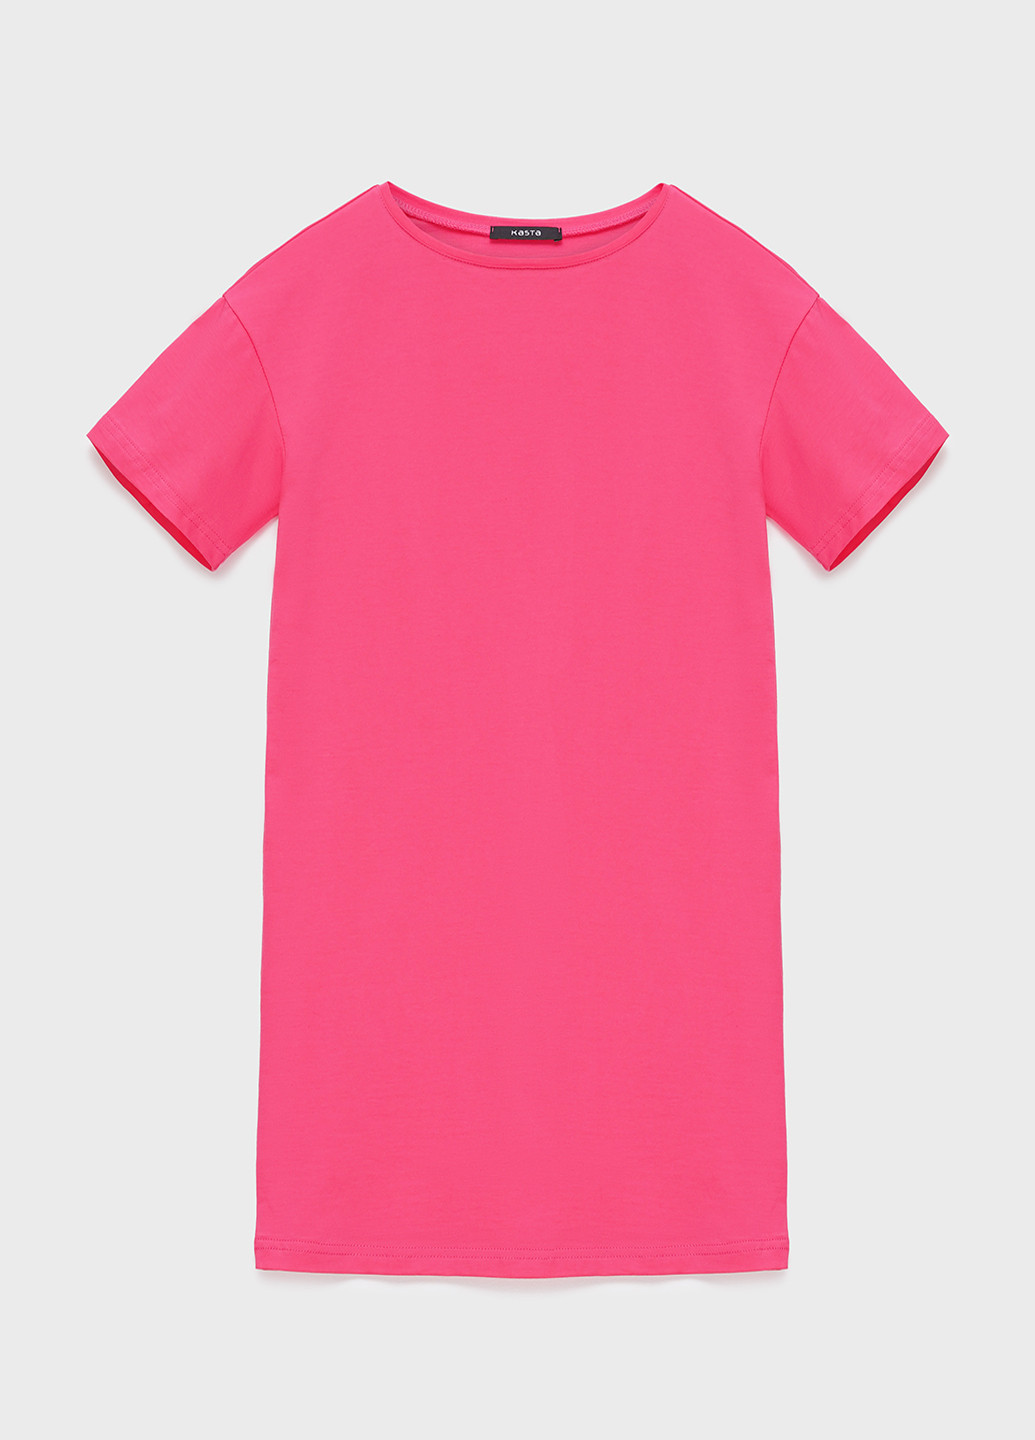 Розовая летняя футболка-платье женское KASTA design